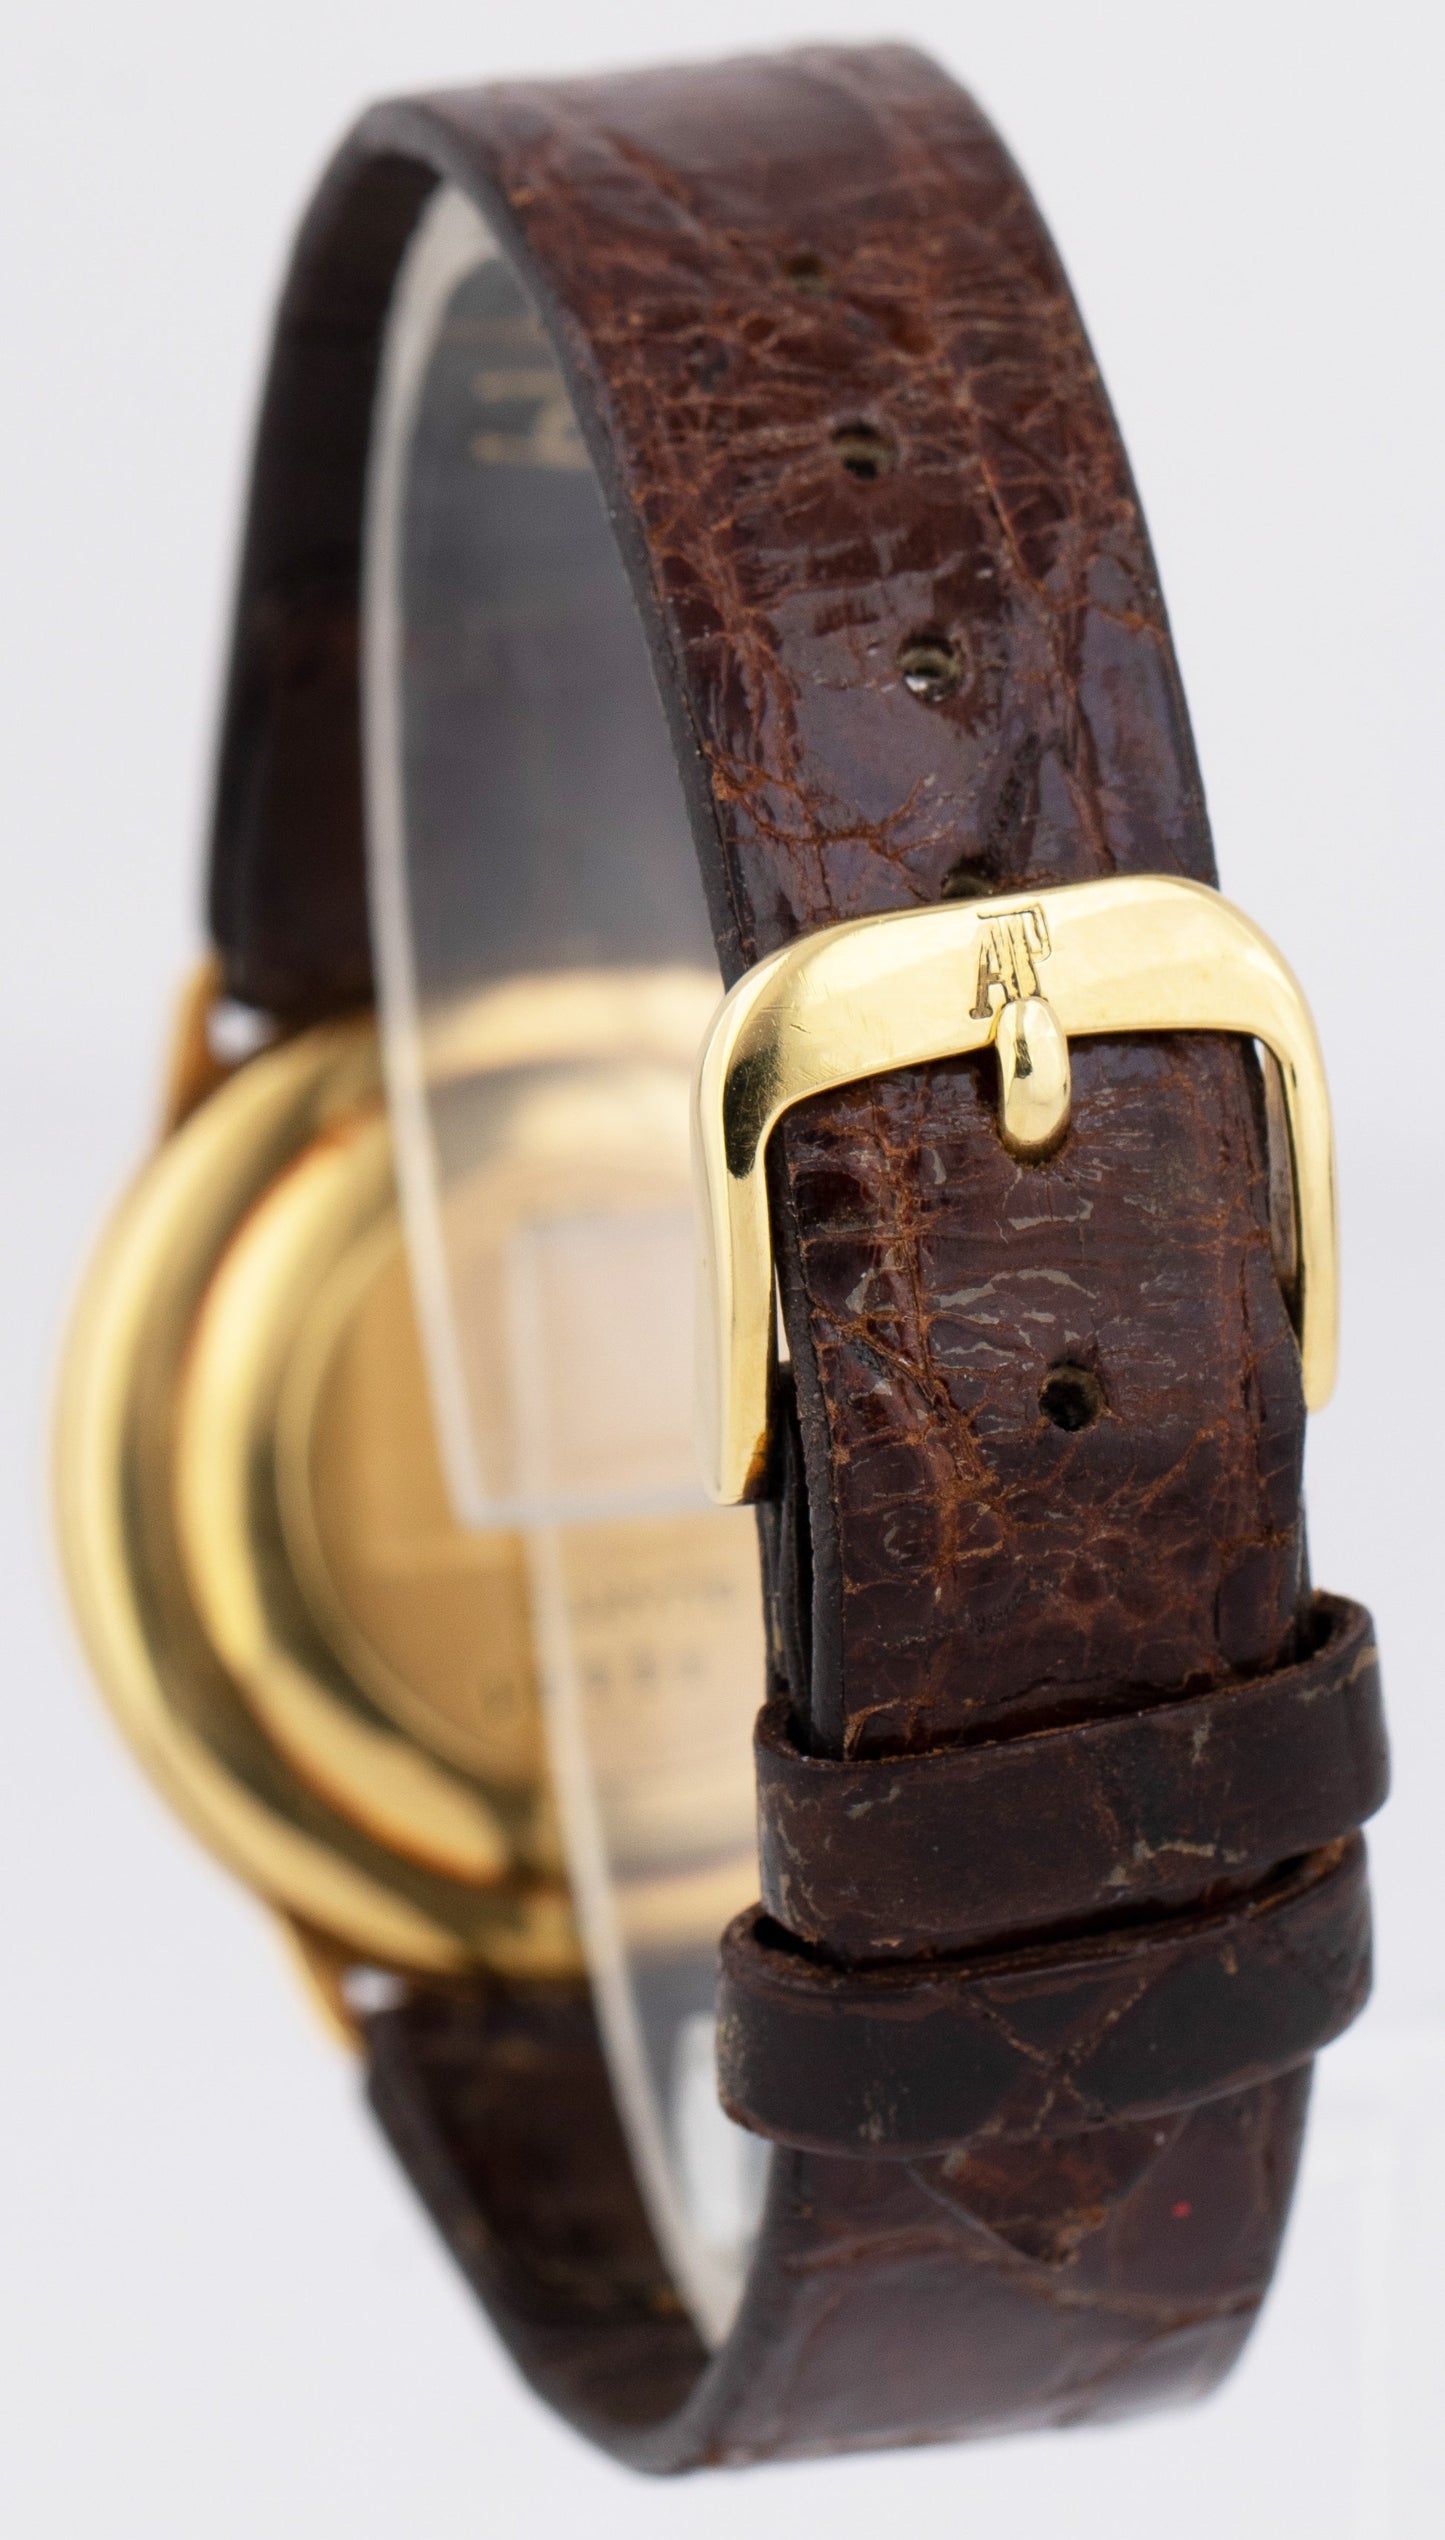 Audemars Piguet Classic Ultra Thin 18K Yellow Gold Quartz White Swiss Watch